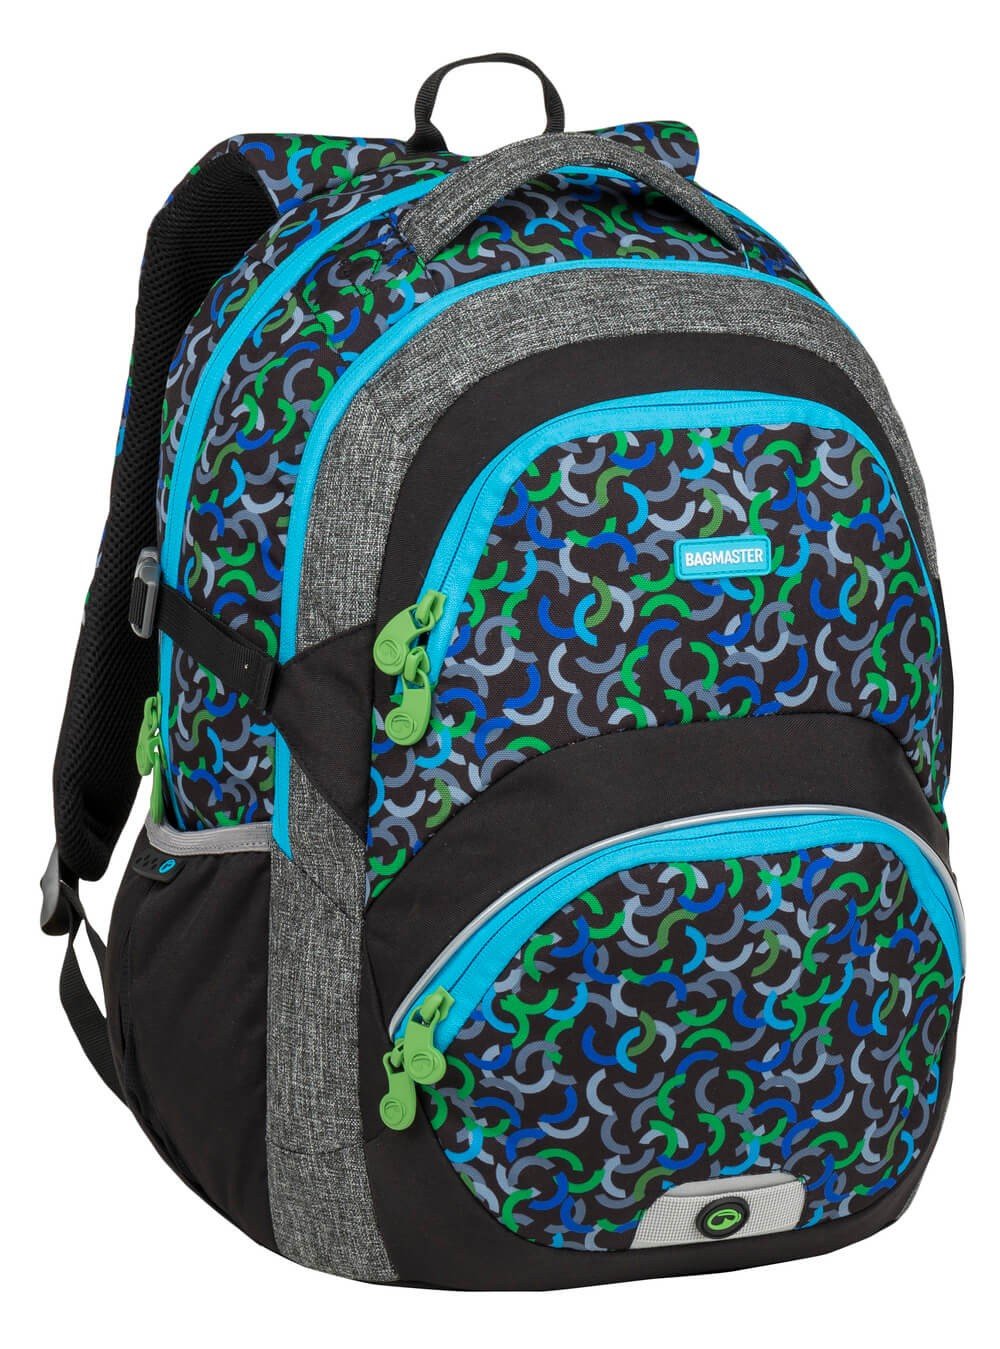 Školní dvoukomorový batoh THEORY 9 E - zeleno modrý